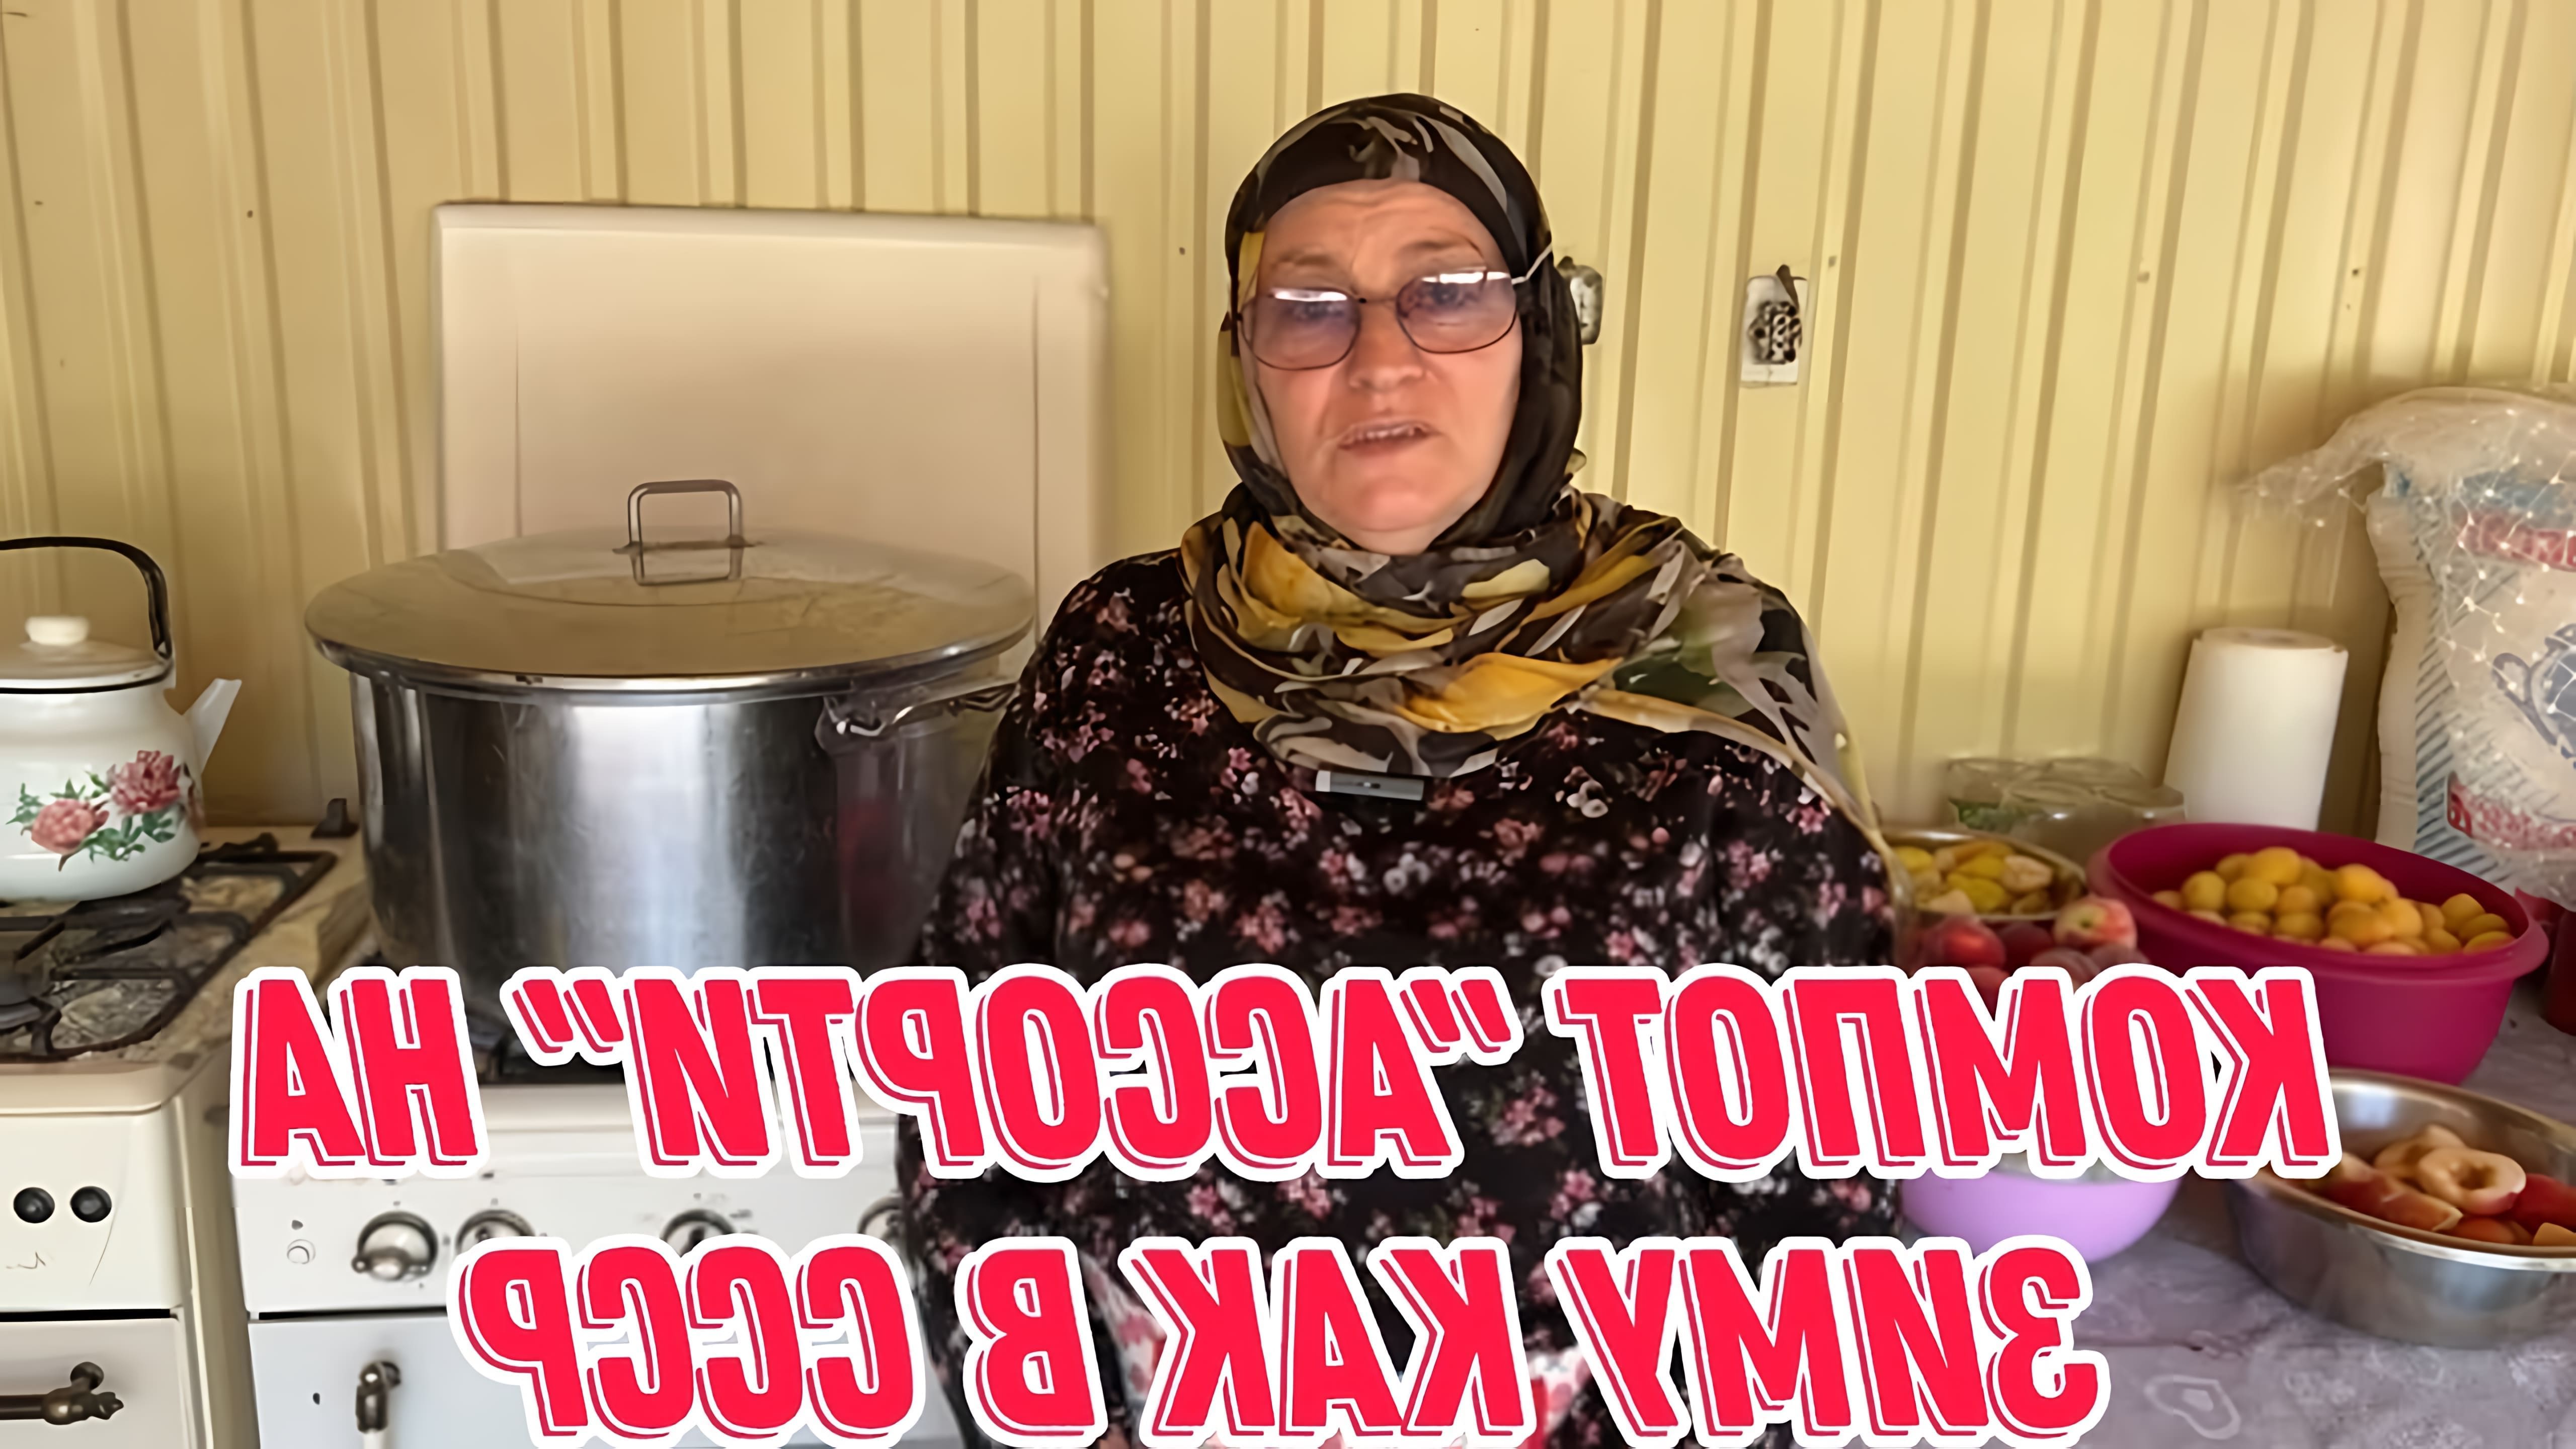 В этом видео автор рассказывает о том, как приготовить компот "Ассорти" на зиму, как это делали в СССР